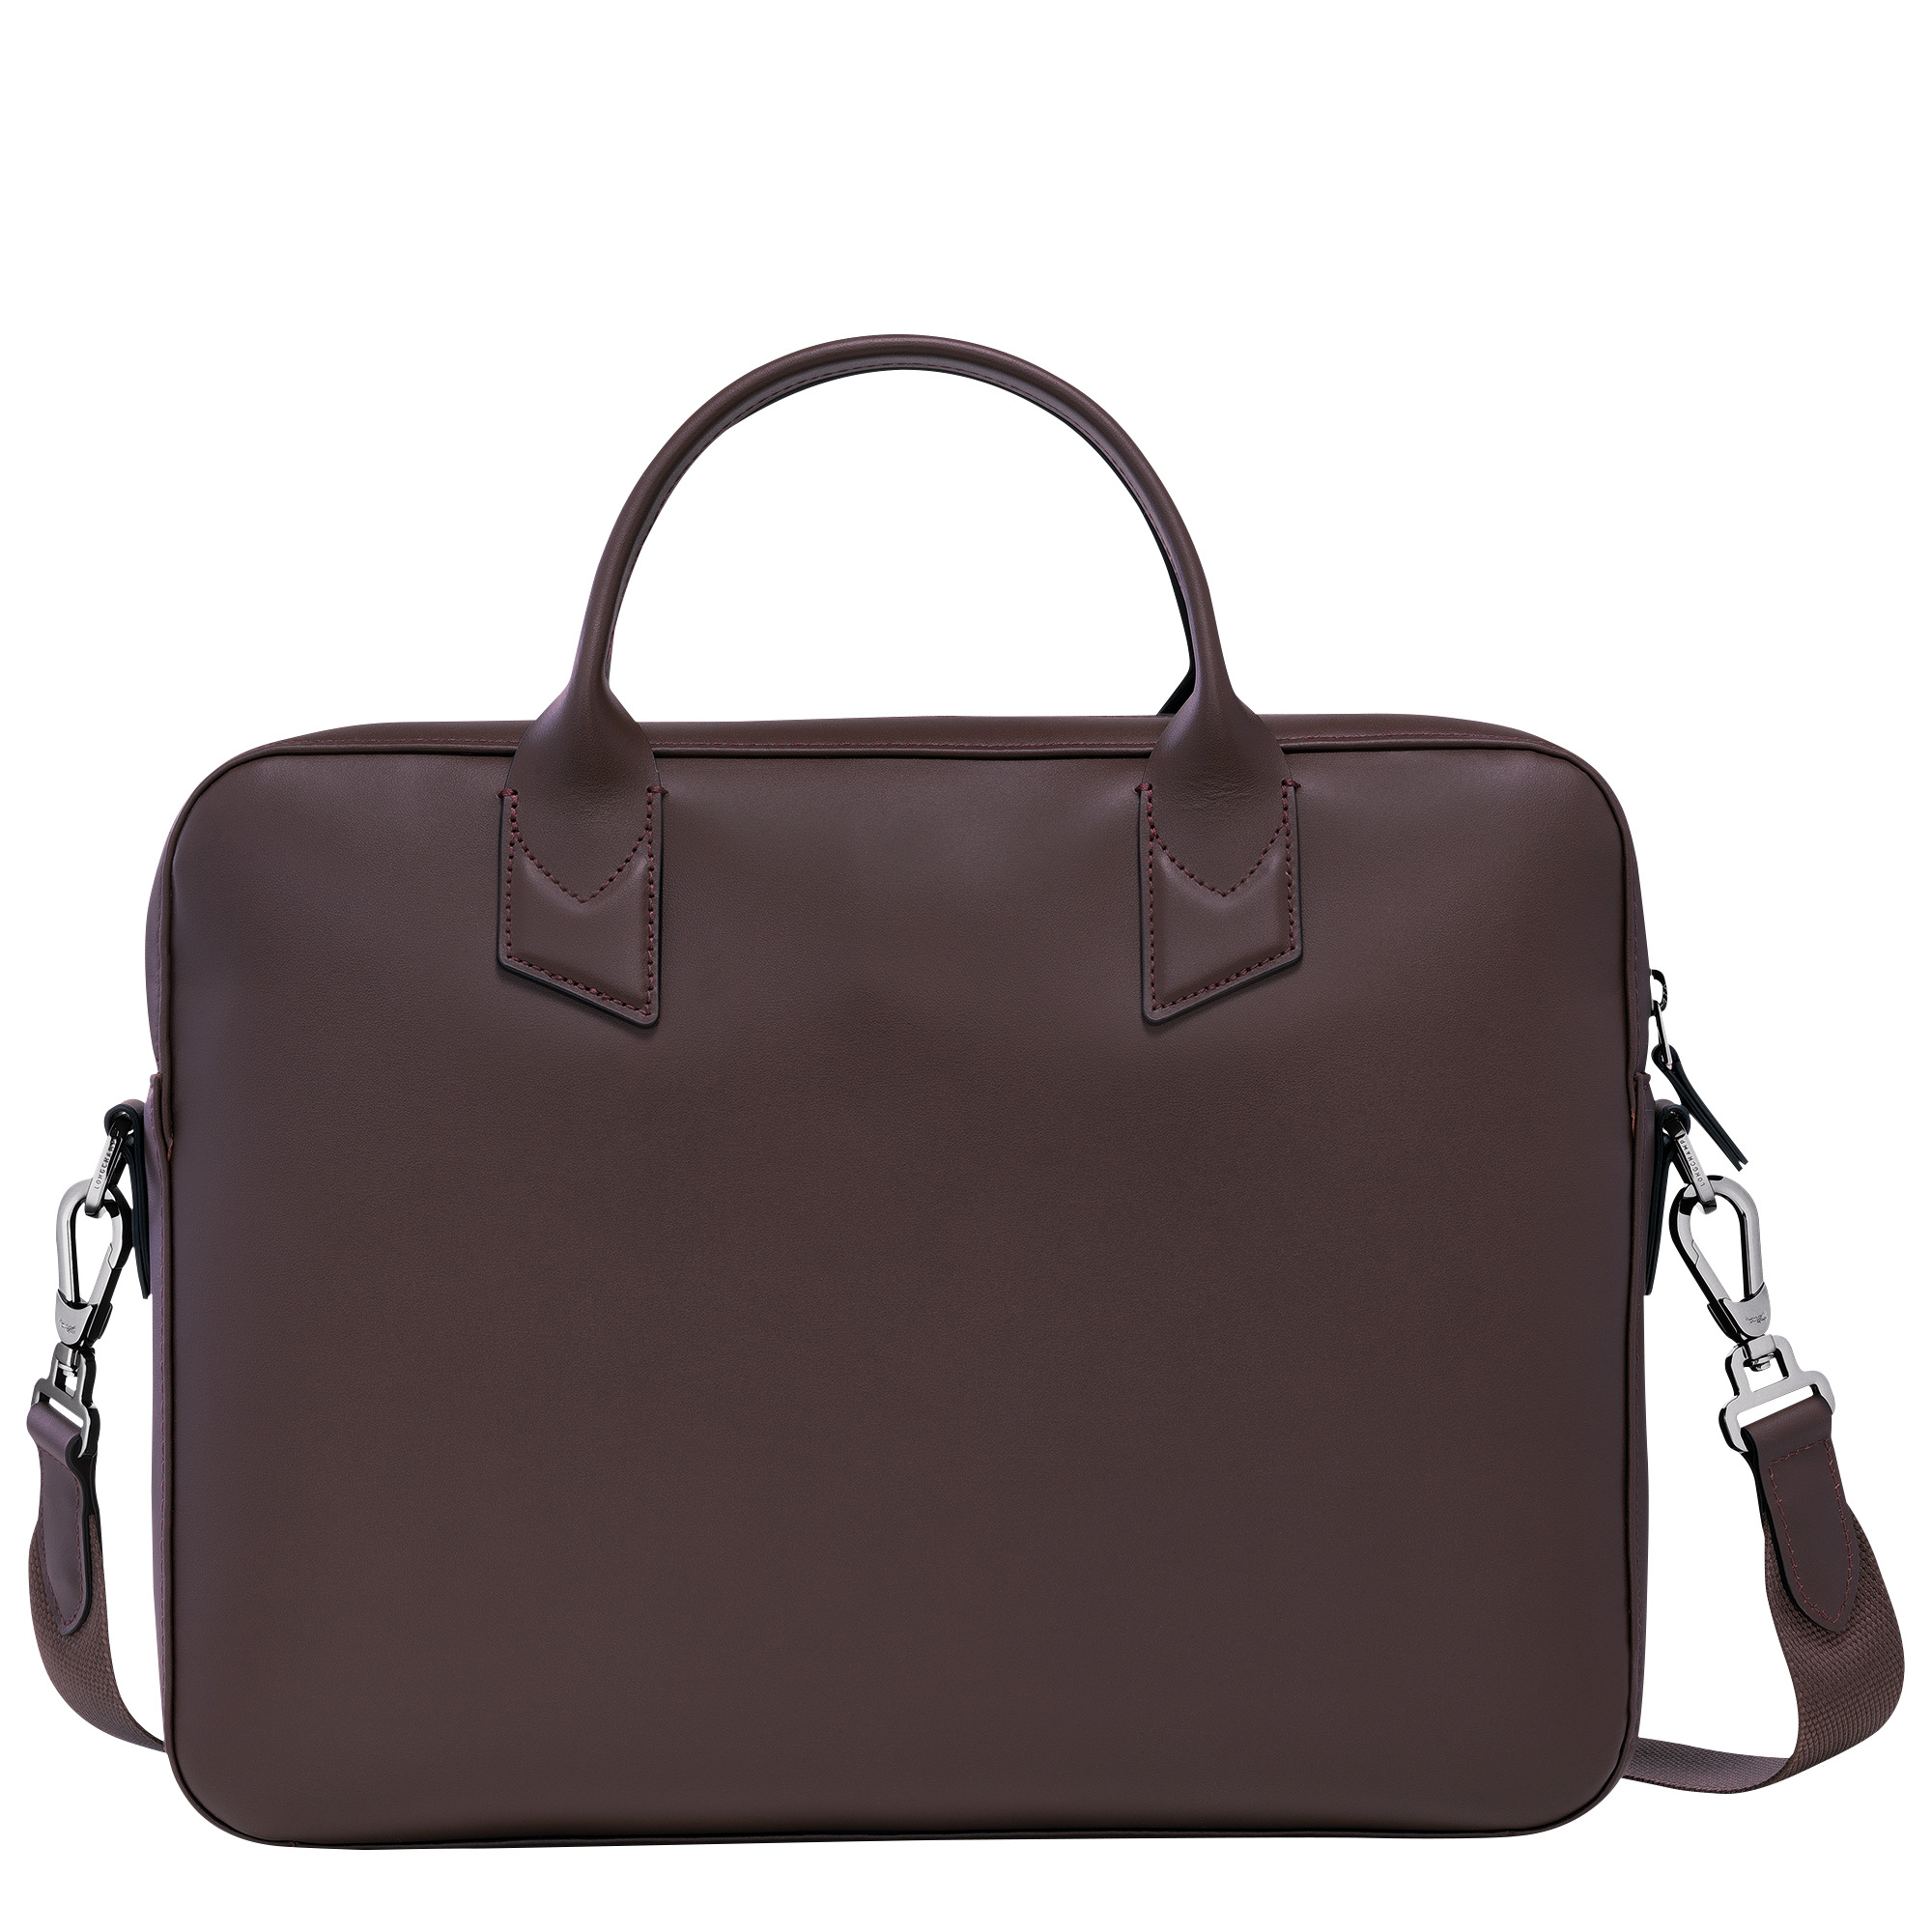 Longchamp sur Seine Briefcase Mocha - Leather - 3